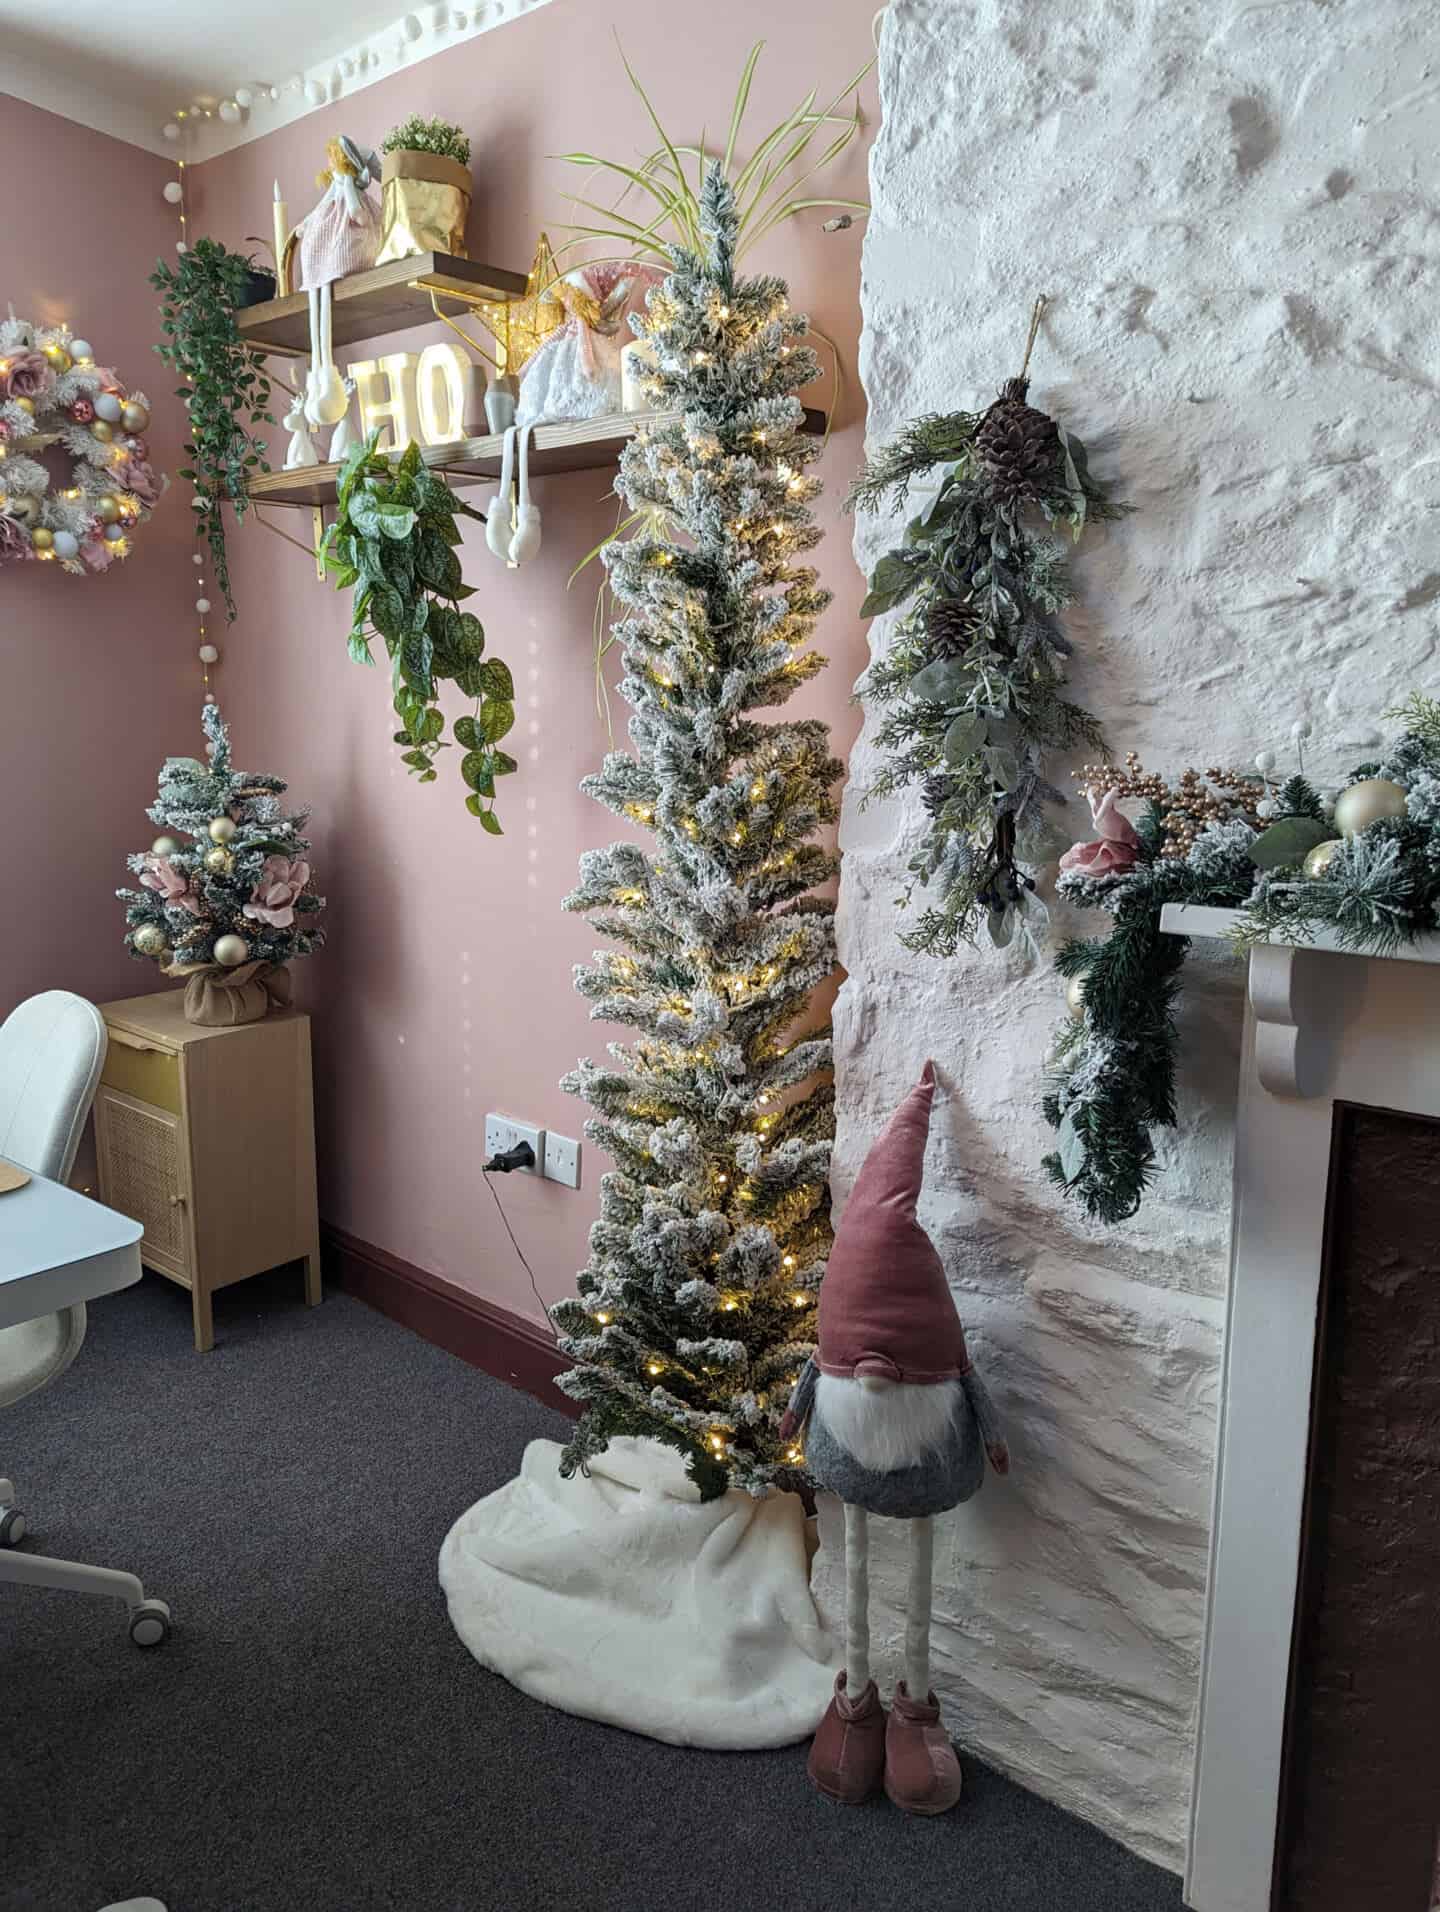 Ein Gonk steht neben einem beflockten Weihnachtsbaum in einem rosa Home Office